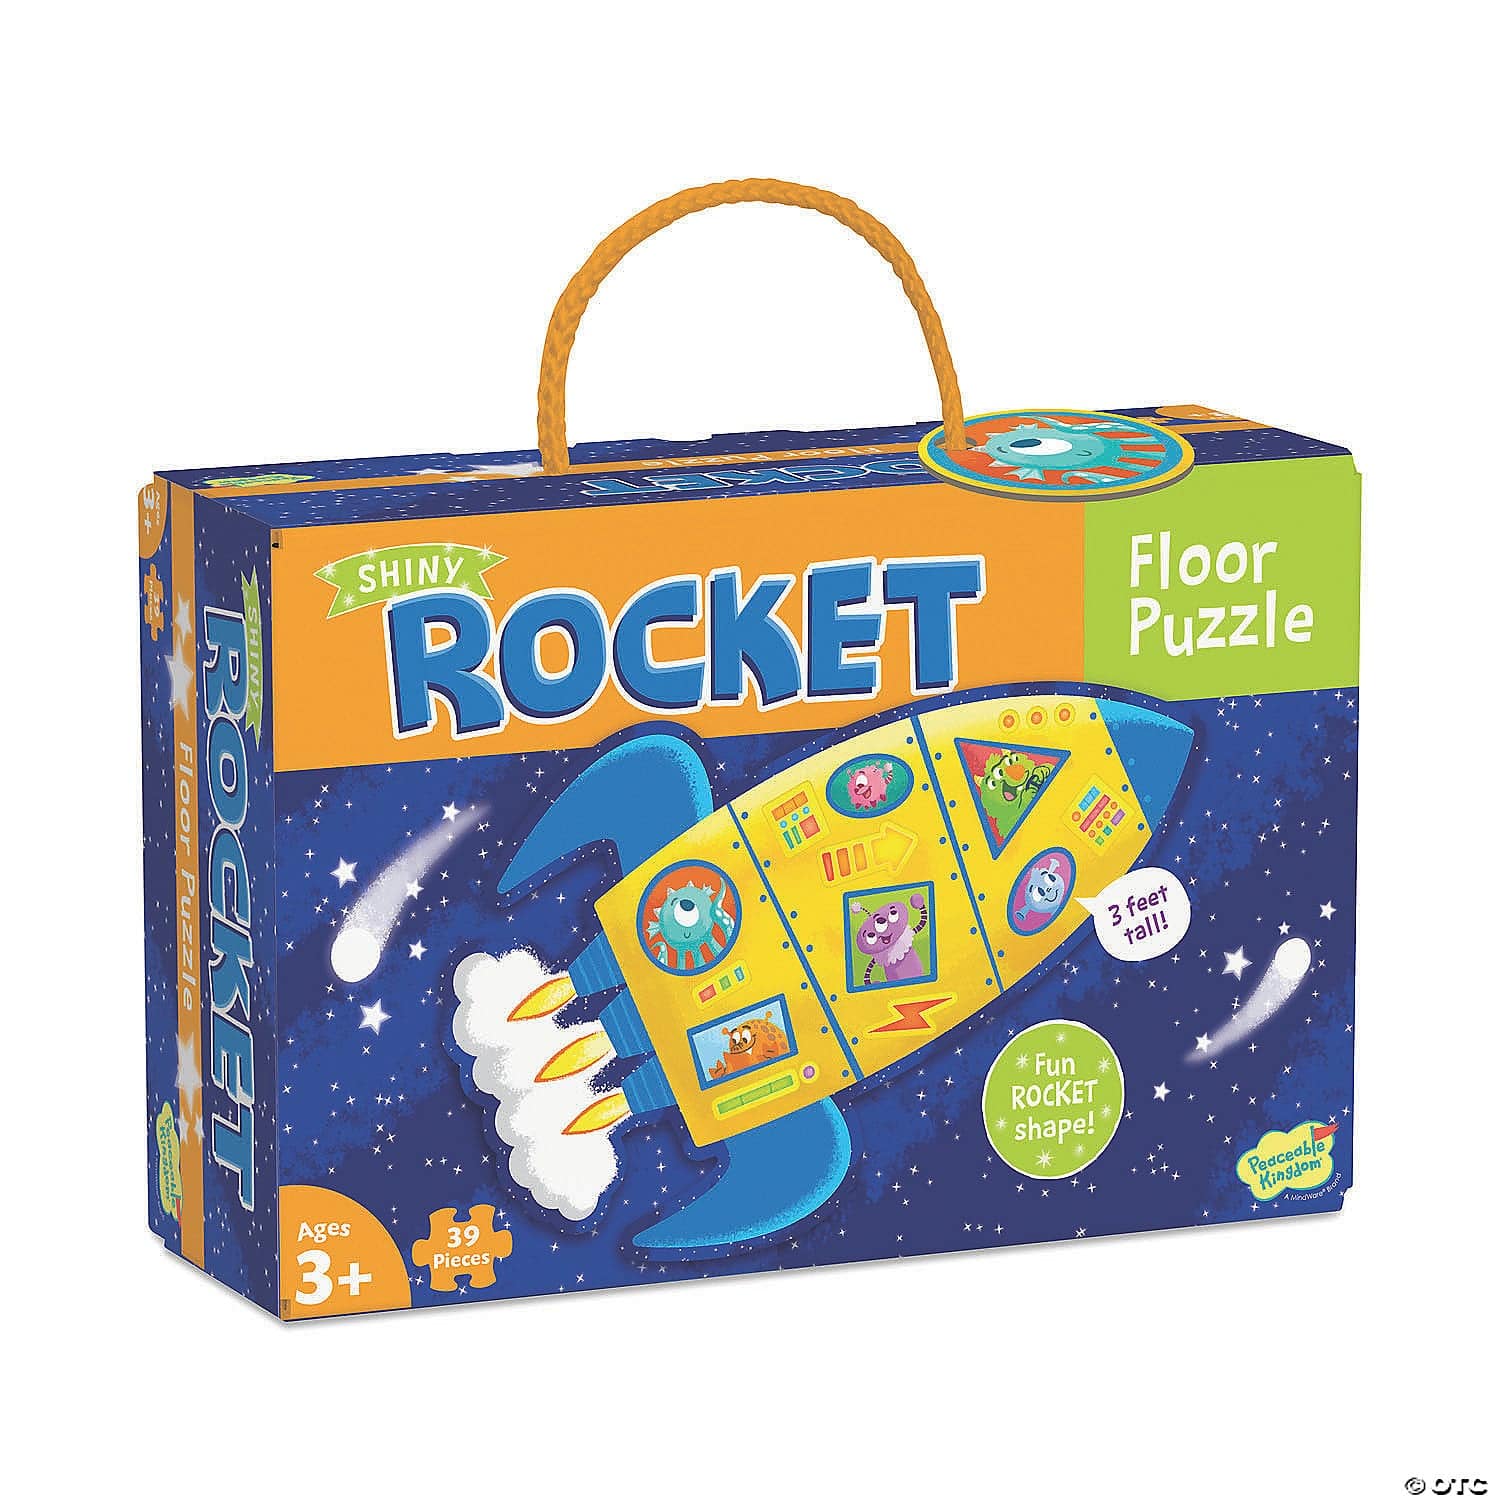 Rocket Floor Puzzle - Twinkle Twinkle Little One